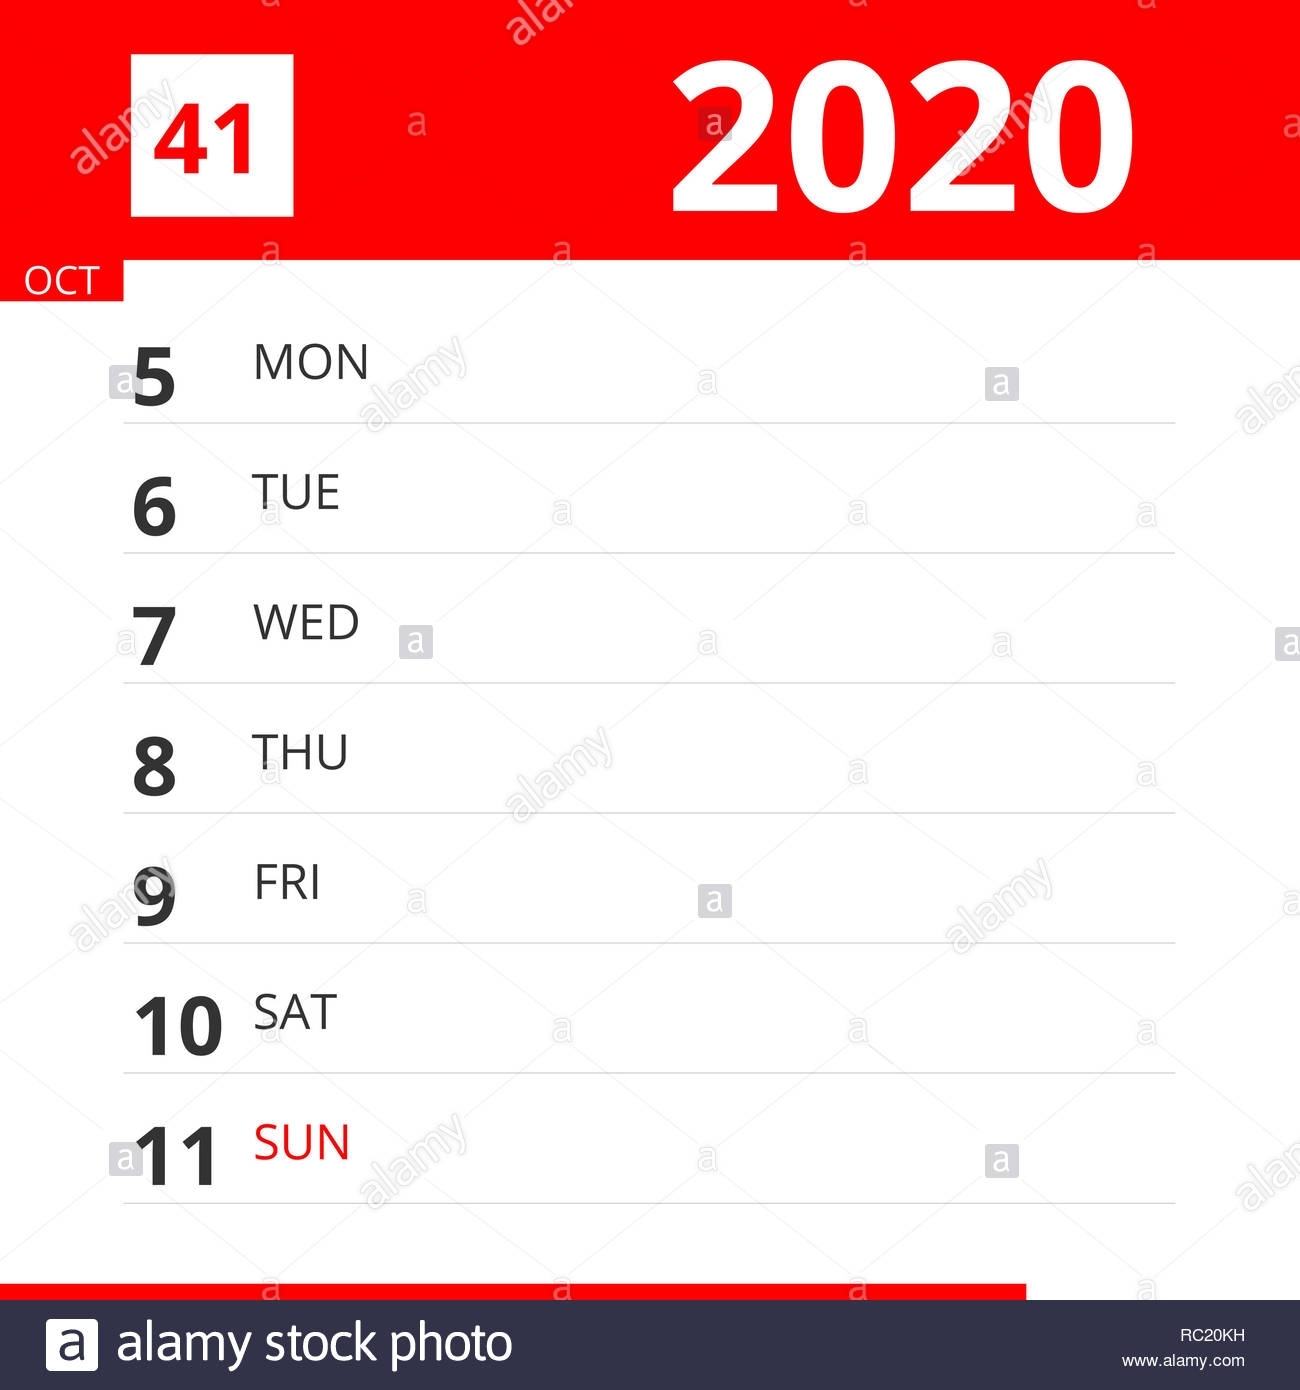 Calendar Planner For Week 41 In 2020, Ends October 11, 2020